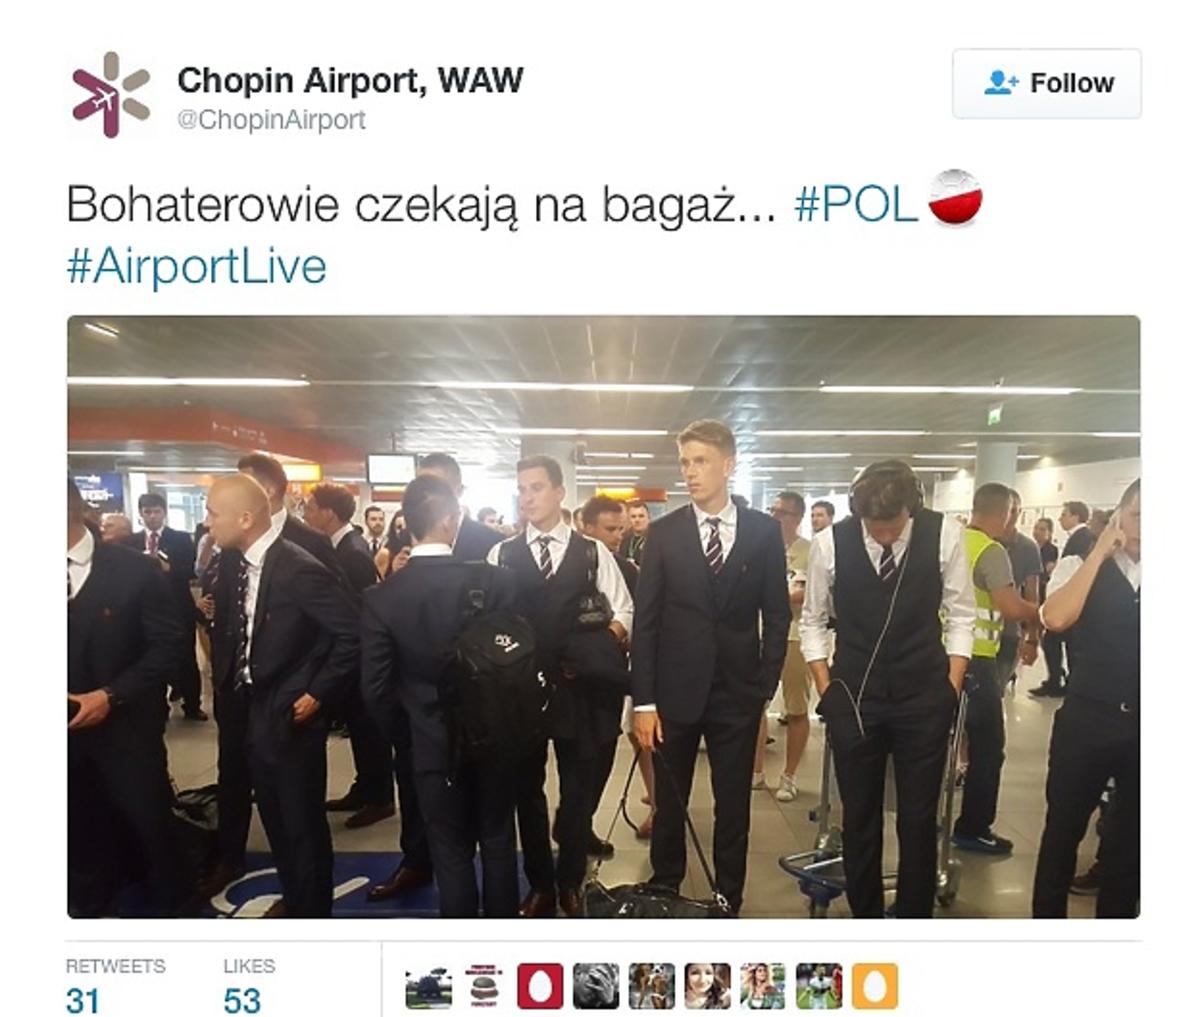 Piłkarze na lotnisku odbierają bagaże